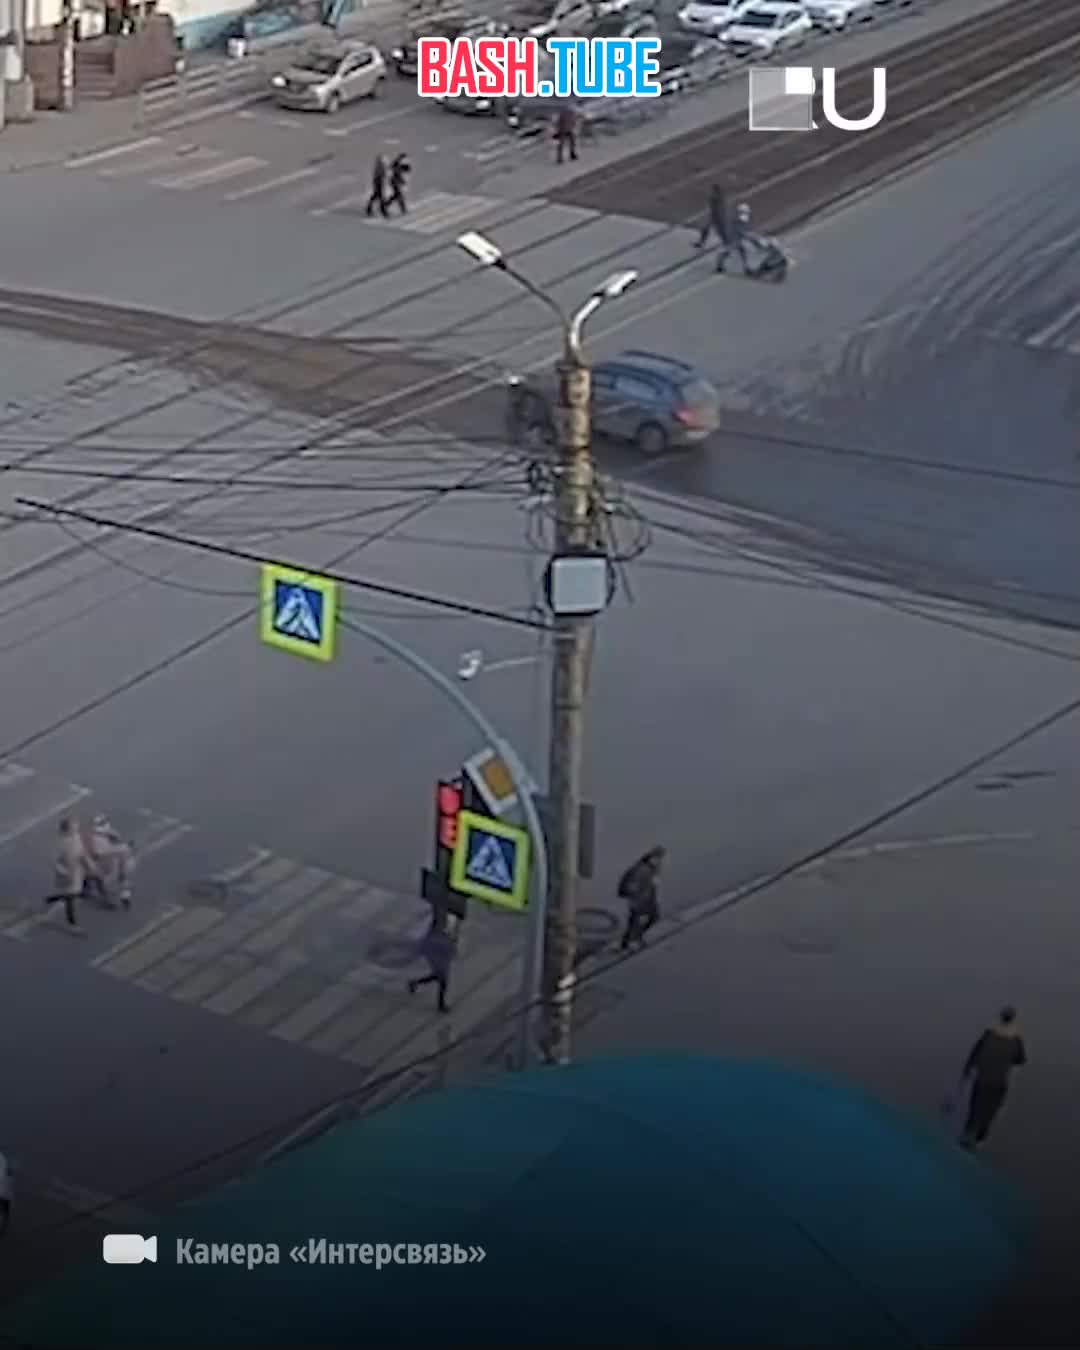  На пересечении улиц Гагарина и Руставели в Челябинске велосипедист сбил ребенка на самокате